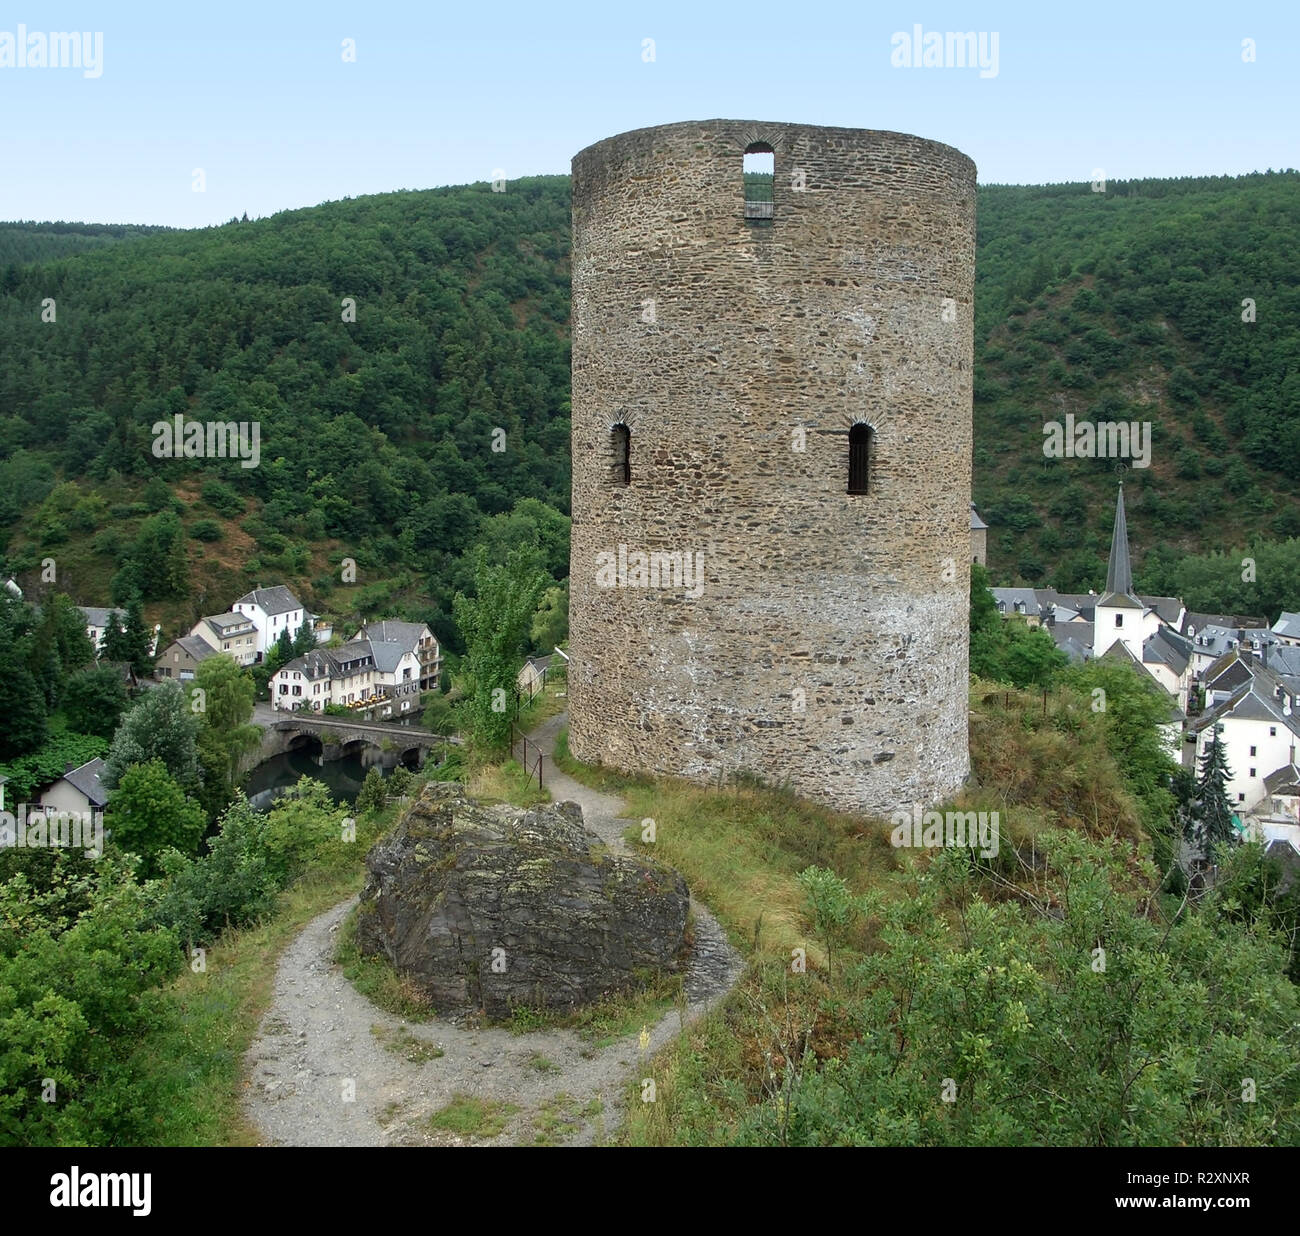 esch-sur-sÃ»re and castle ruin Stock Photo